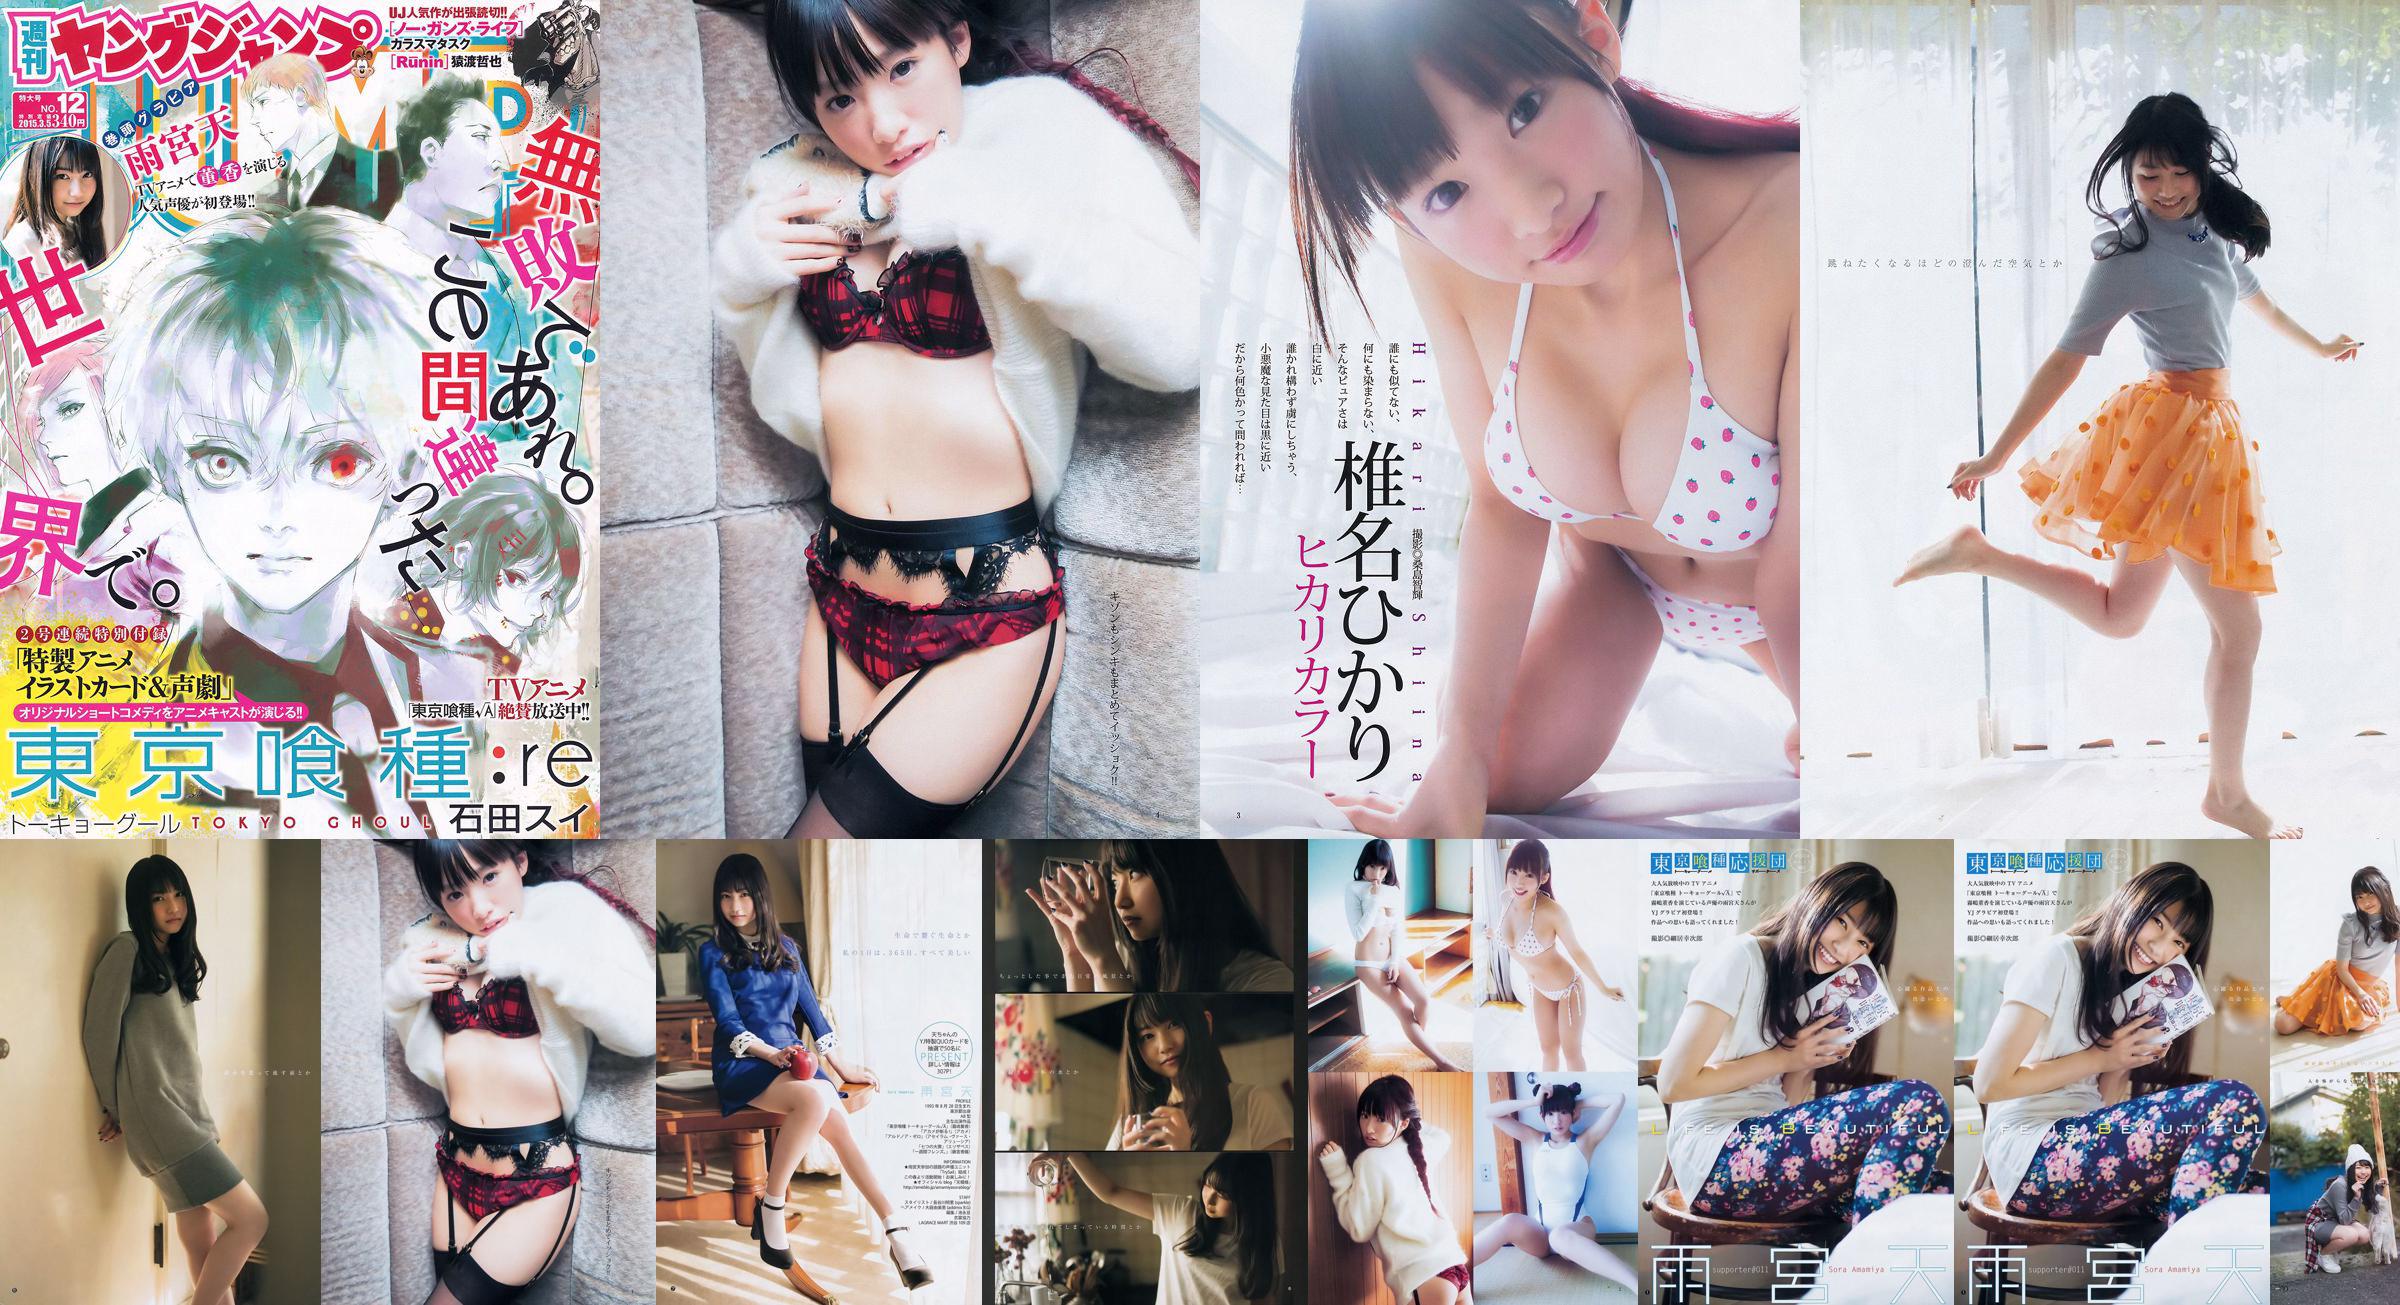 Amamiya Tian Shiina ひかり [Weekly Young Jump] 2015 No.12 Photo Magazine No.83e6ab Page 2